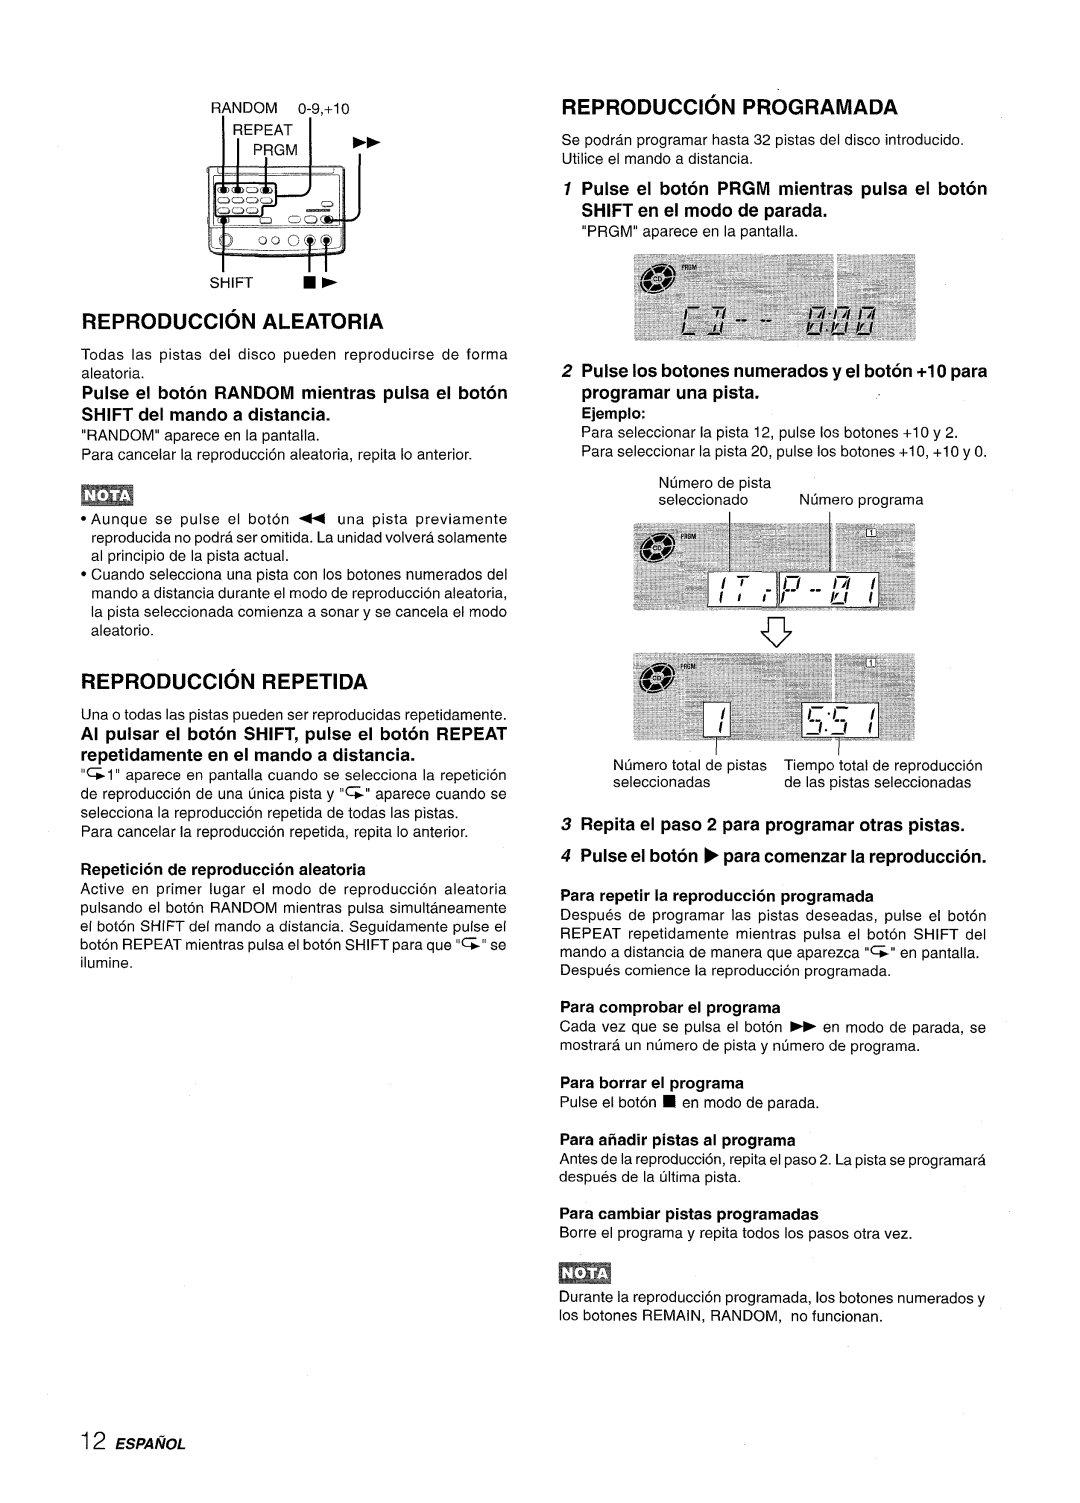 Aiwa XR-M70 Reproduction Aleatoria, Reproduction Programada, Reproduction Repetida, SHIFT del mando a distancia, Ejemplo 